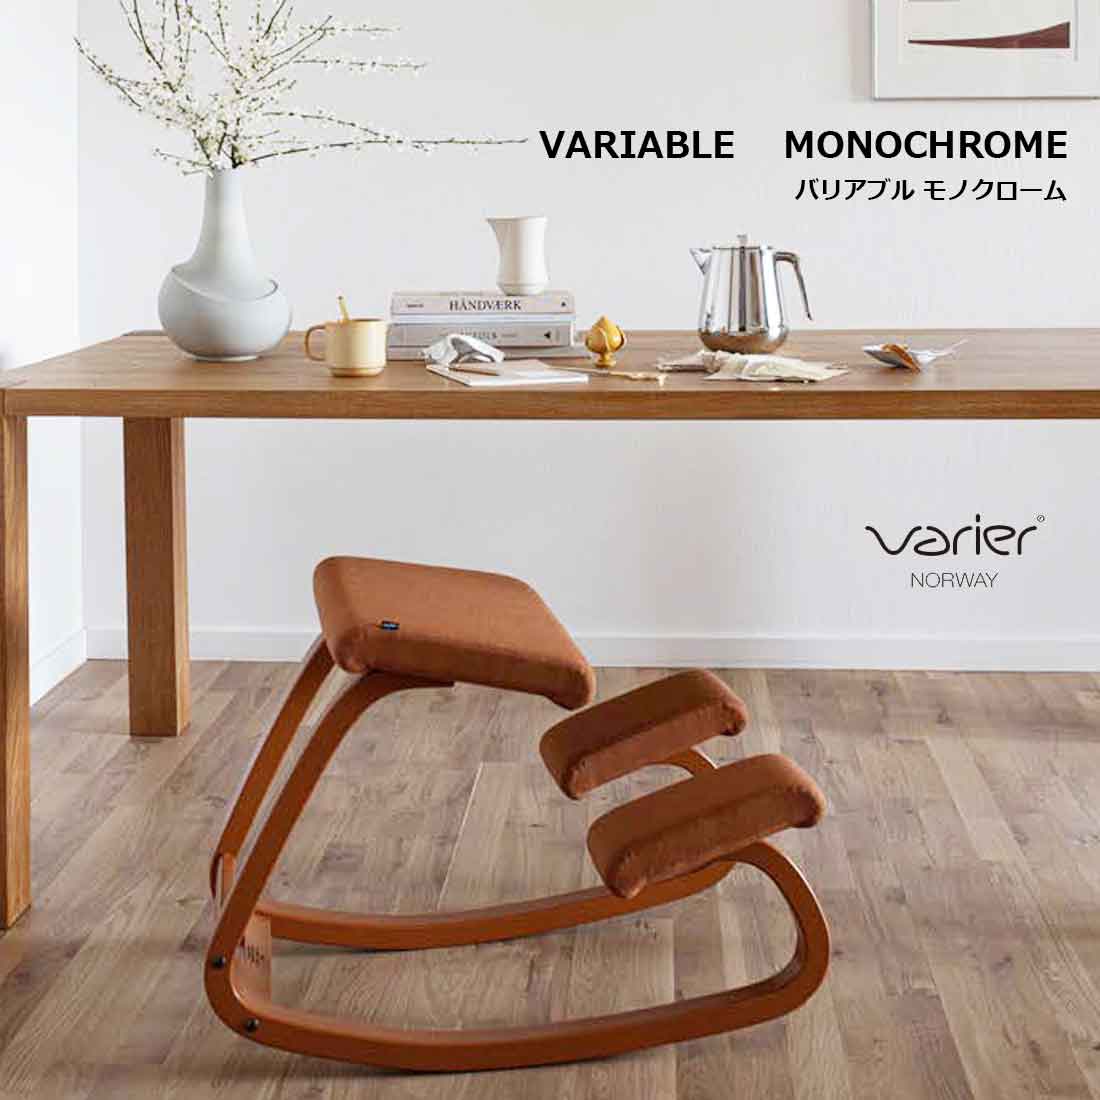 【Varier】VARIABLE MONOCHROME ヴァリエール バリアブル モノクローム バリアブルバランスは、体の動きを促すと共に、個々の動きに対する反応力を高めます。 持続する動きの中での体と椅子の関係及び作用と反作用の仕組みにより、体と心にエネルギーと活力が生み出されます。 バランスチェアとして最初にデザインされた椅子「バリアブル」は、バランスシリーズの原点となる一脚です。 約30年前にデザインされたとは思えない斬新さを、今も保ち続けています。 素材 木部　ブナ材ラッカー塗装　　張地　布　ウール95% 　ポリアミド5％ 耐加重 110kg ※ノルウェーの検査機関で120kgの負荷をかけた検査をクリアしていますが日本国内基準を保証するものではありません。 デザイナー ピーター・オプスヴィック カラー オレンジ：Oxide/グリーン：Fern イメージ写真について イメージ写真には、該当商品以外の撮影小物なども写っておりますが、それらの小物は商品には含まれておりません。お間違いのないよう、ご注意くださいませ。 手工品の場合 商品がハンドメイドの場合、個体差が生じる場合がございますが、いずれも良品です。色や形、2つとないハンドメイドの良さをお楽しみください。